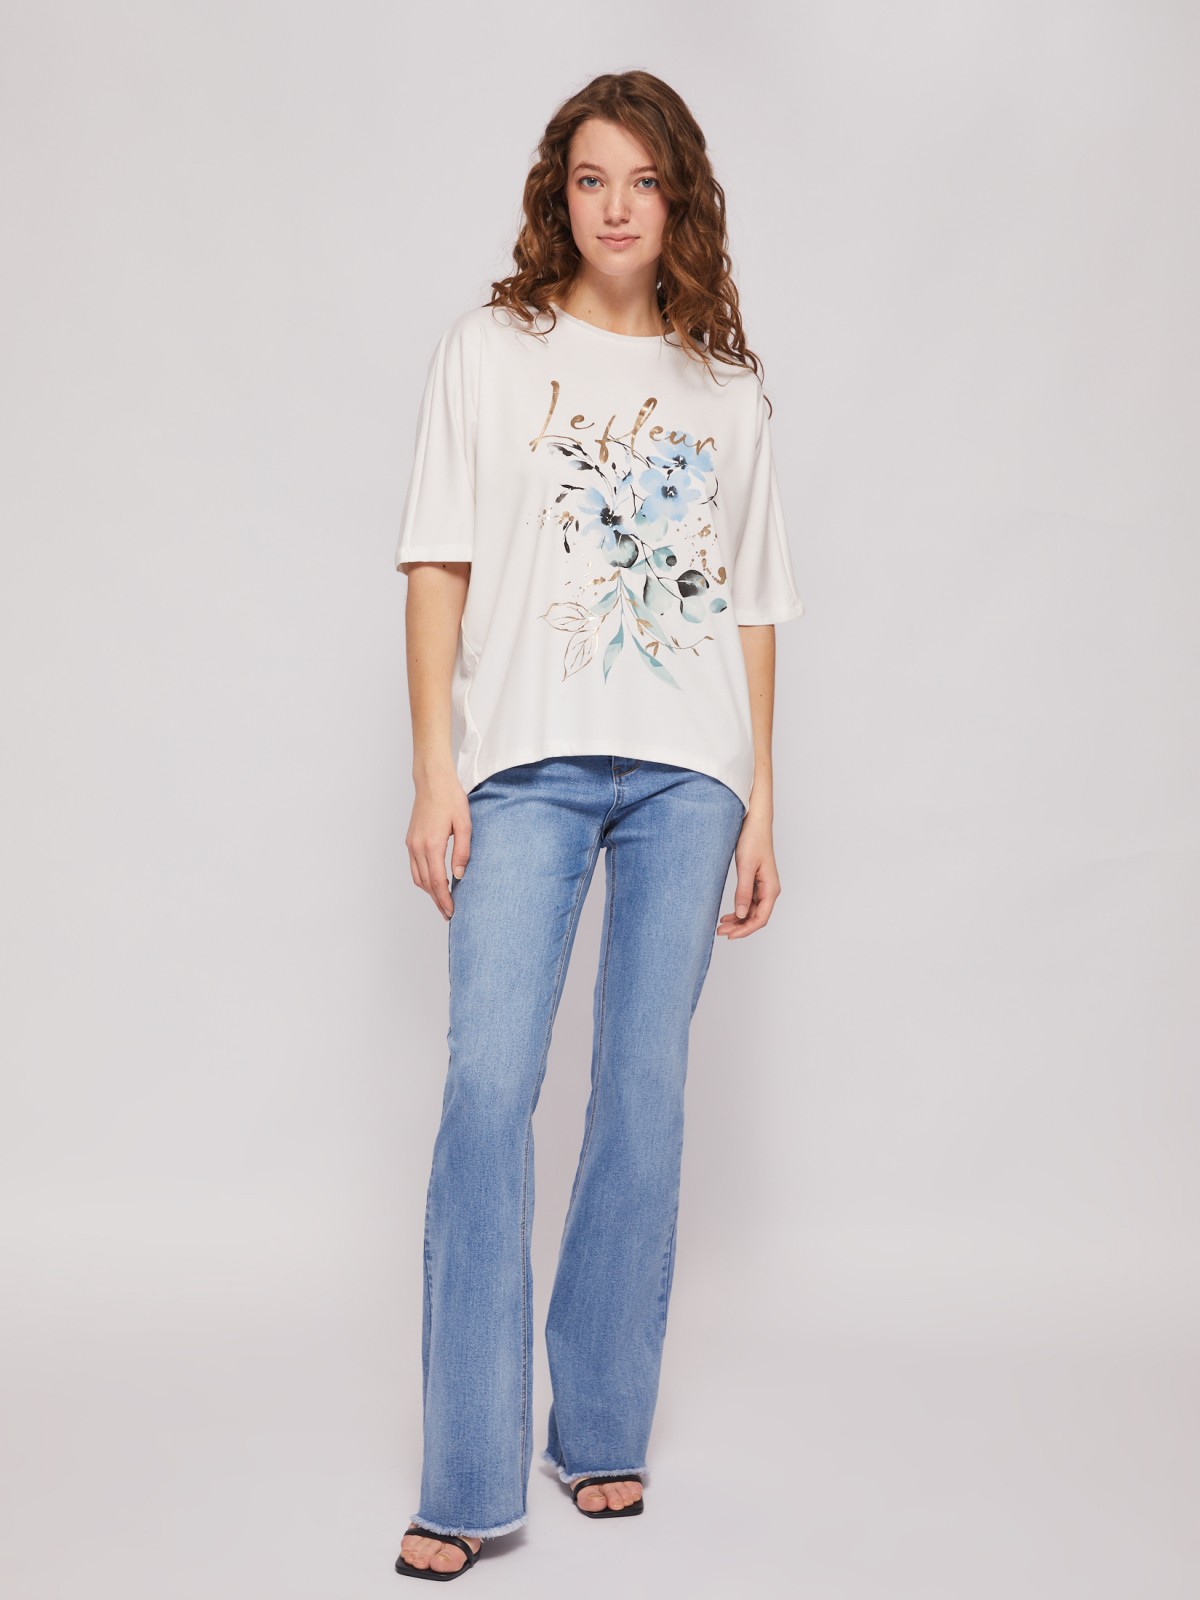 Блузка-футболка с коротким рукавом и цветочным принтом zolla 024213210111, размер M - фото 2